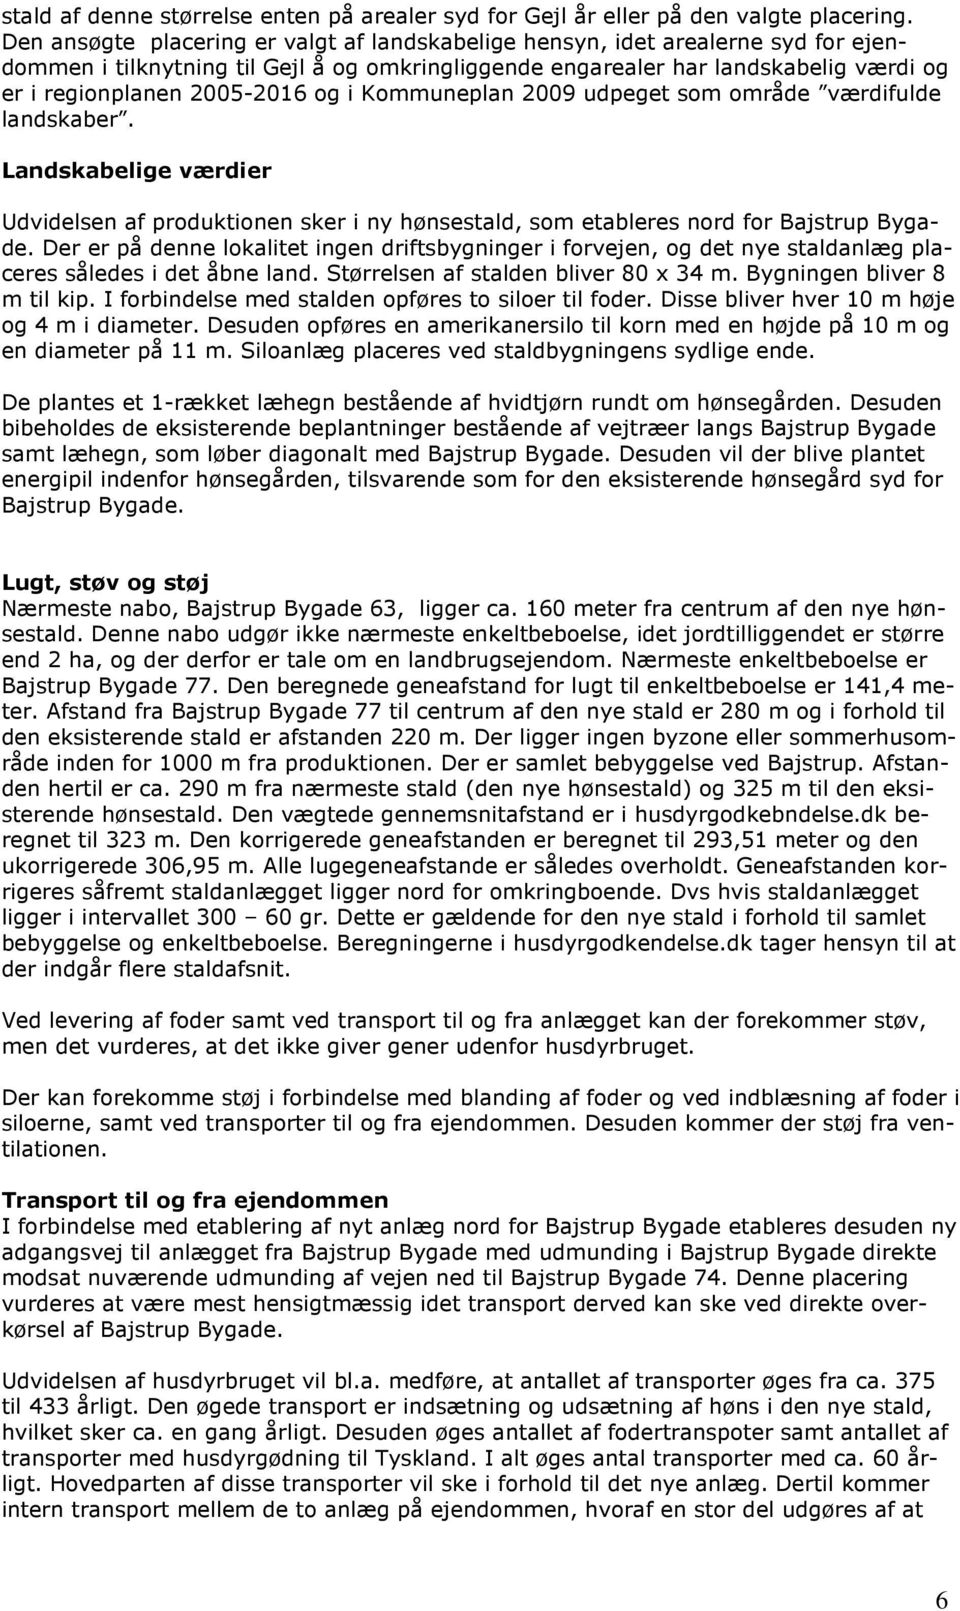 Miljøgodkendelse af fjerkræbruget Bajstrup Bygade 74, 6360 Tinglev - PDF  Free Download